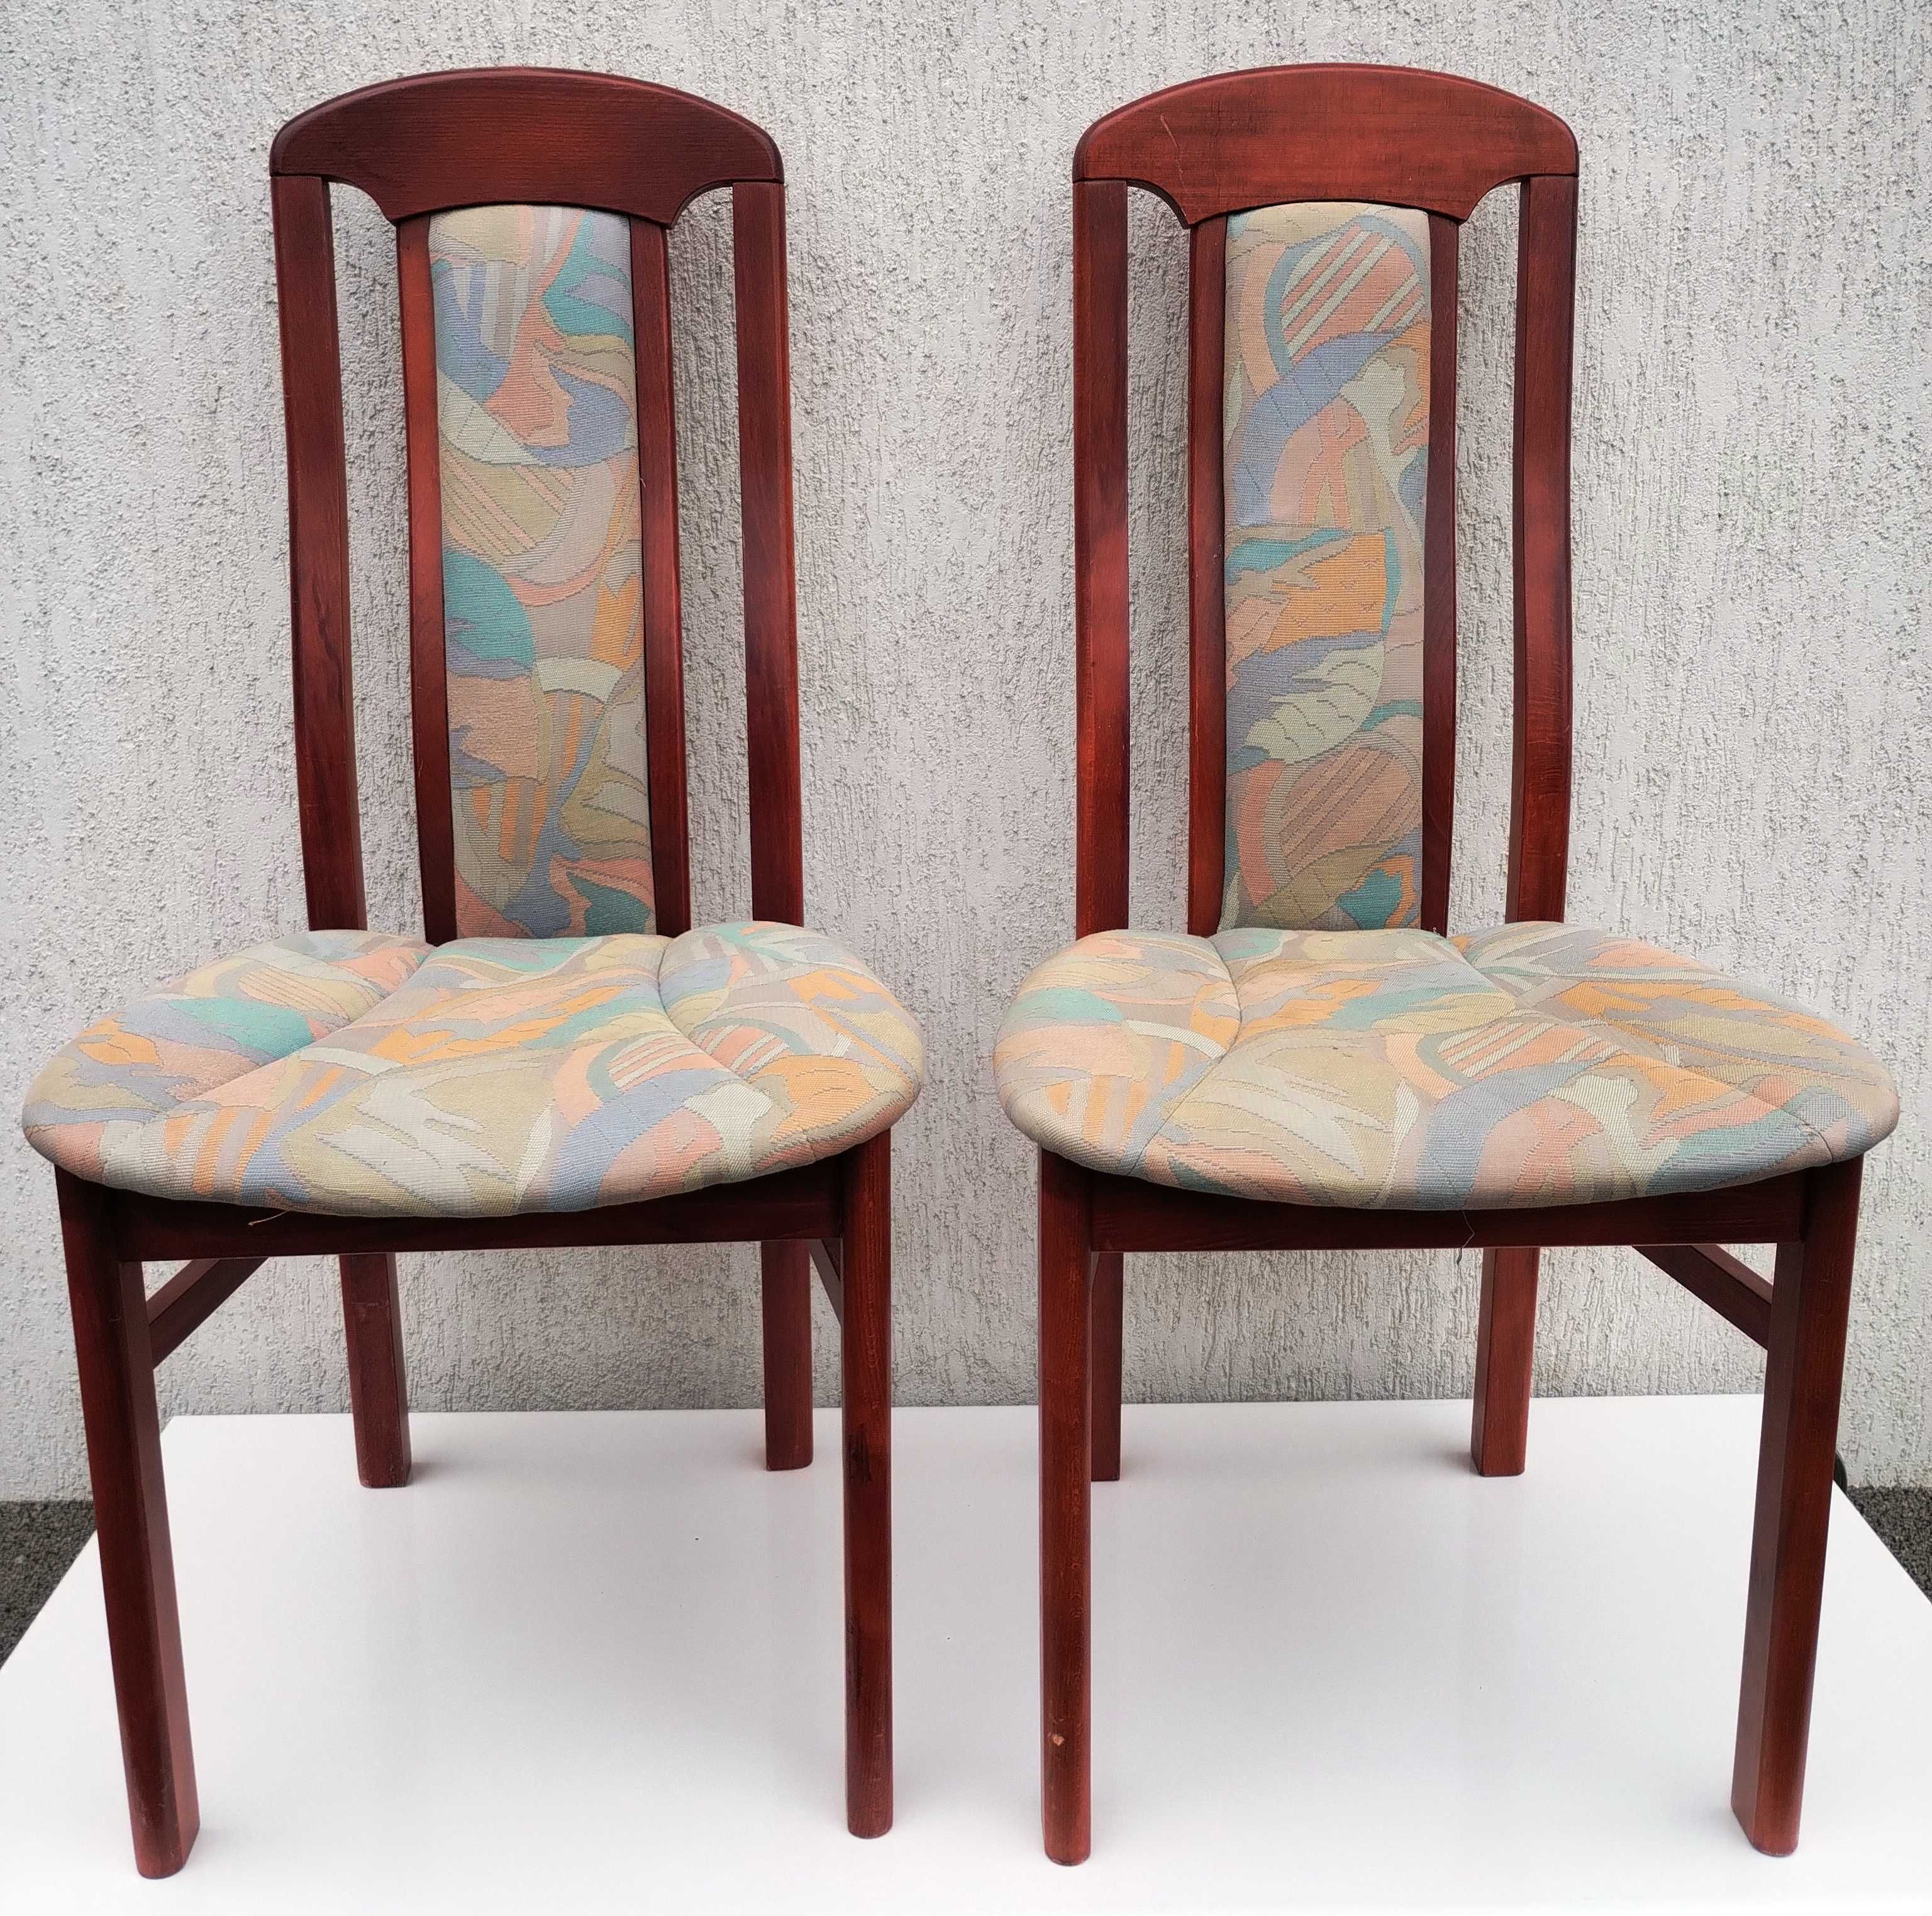 Krzesła krzesło drewniane tapicerowane do kuchni jadalni 2 sztuki Gorzów  Wielkopolski • OLX.pl